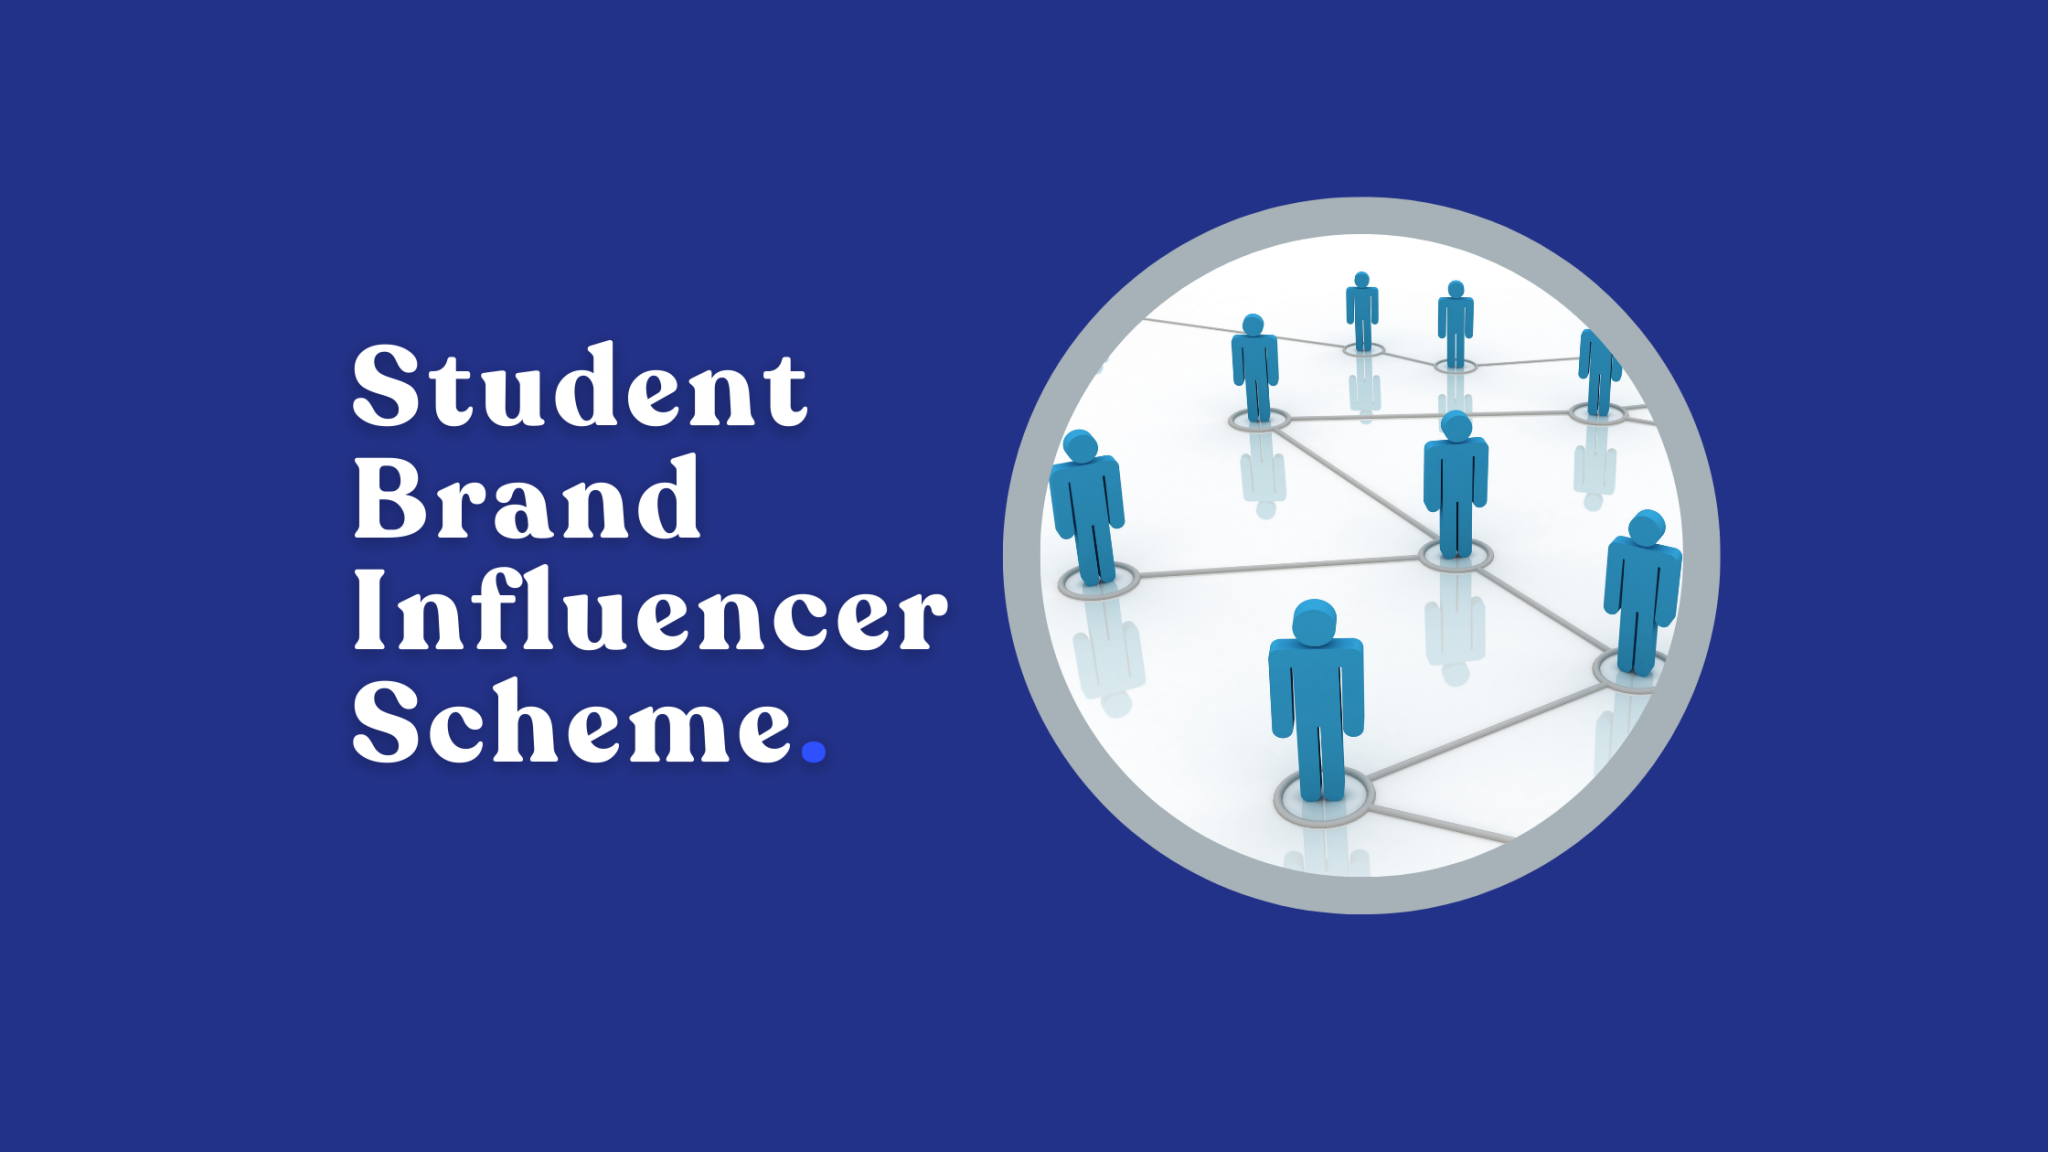 Student Brand Influencer Scheme. (3)